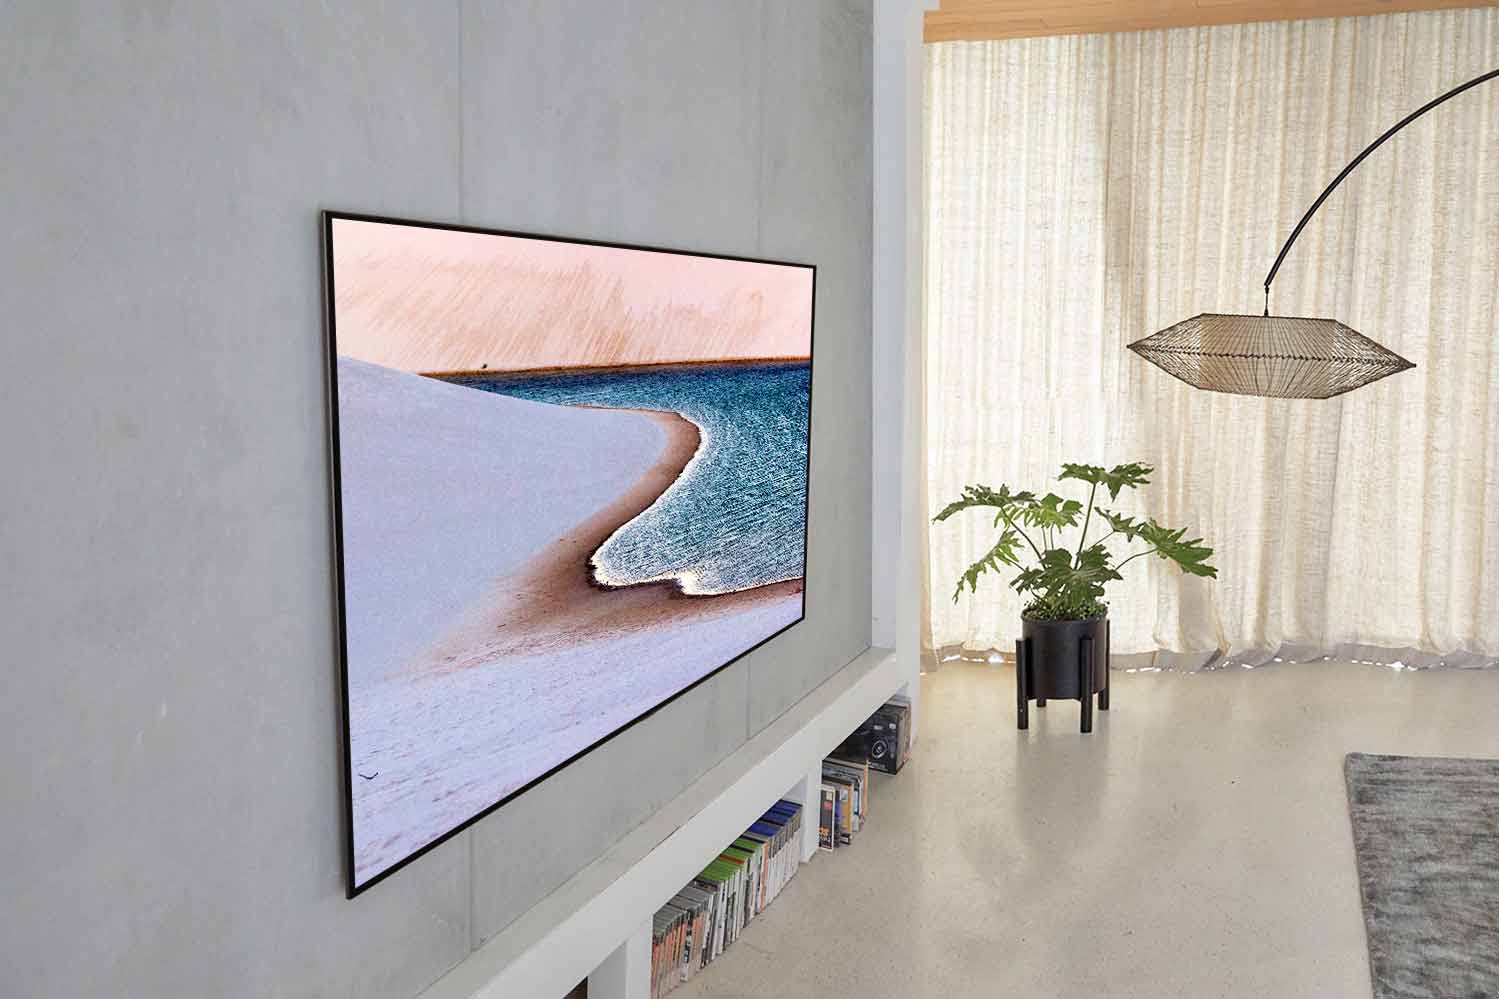 LGエレクトロニクス〉の大画面テレビはなぜセンスがいいと言われるのか 